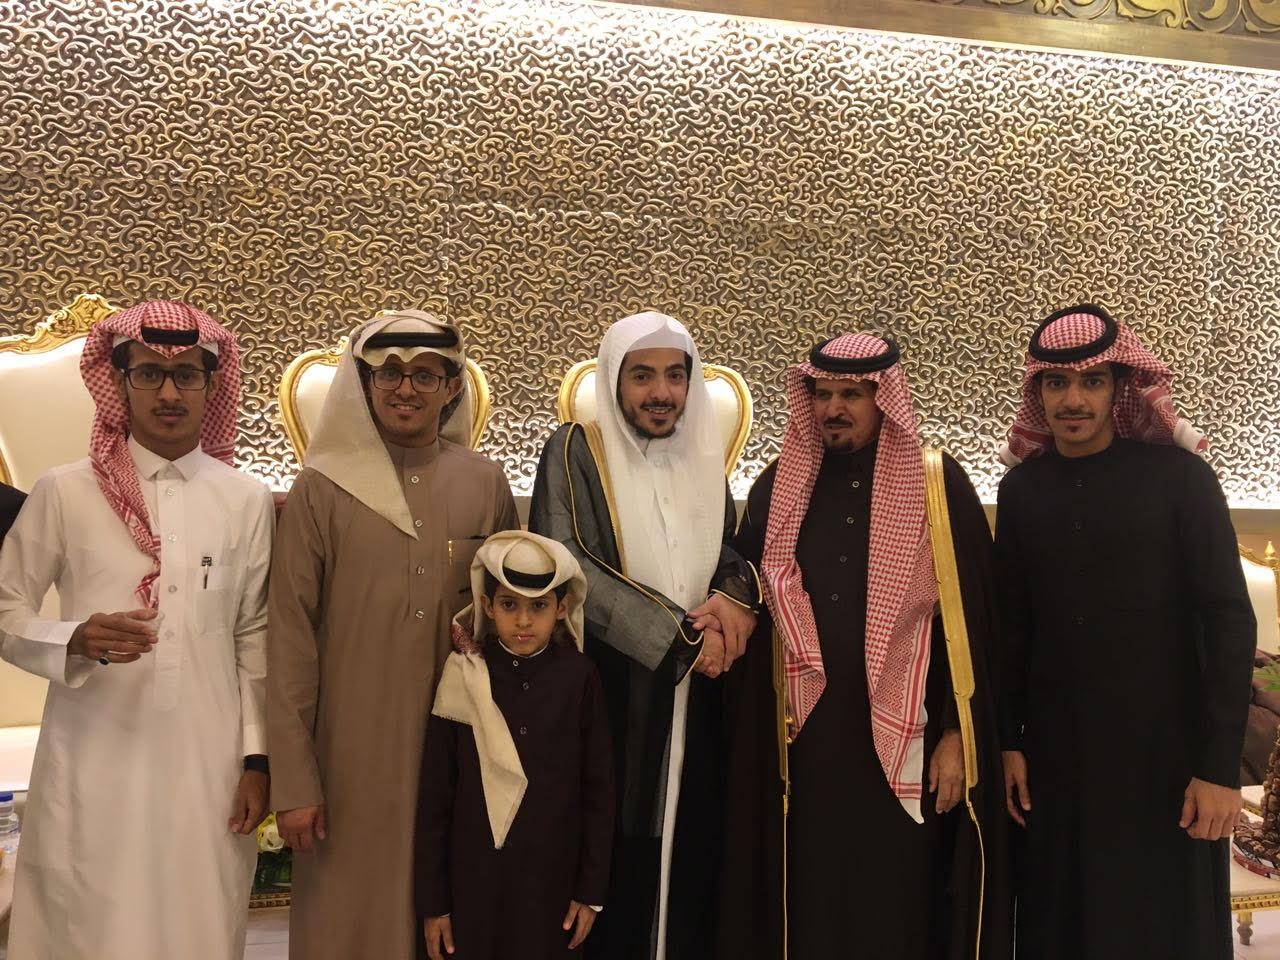 سعد بن فهيد العضياني يحتفل بزواجه في الرياض